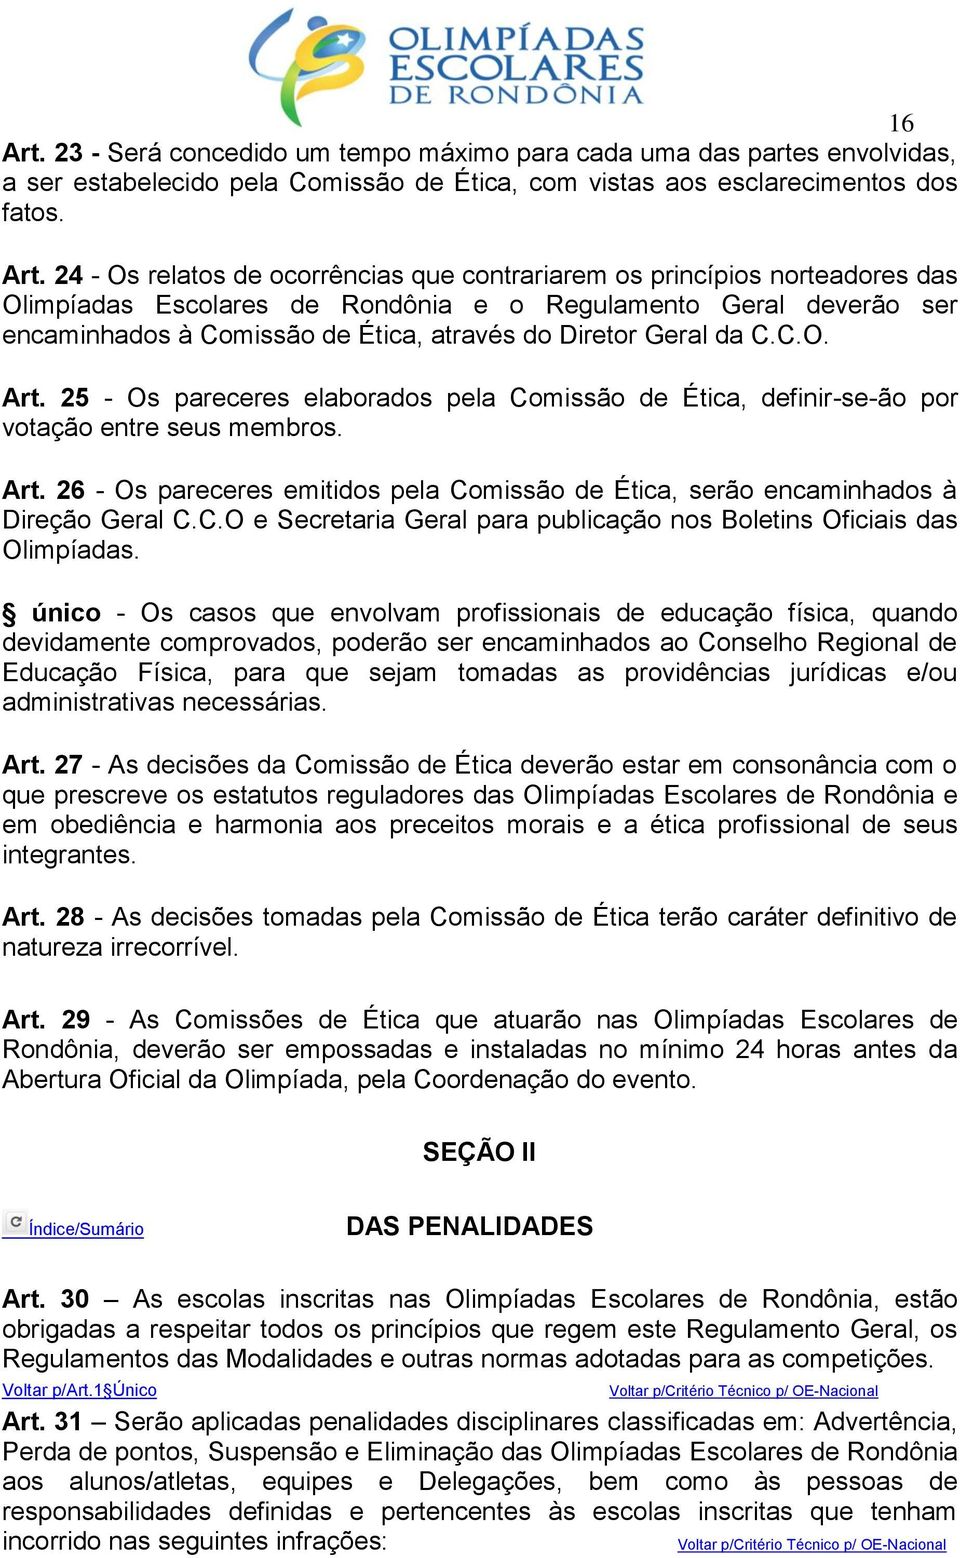 24 - Os relatos de ocorrências que contrariarem os princípios norteadores das Olimpíadas Escolares de Rondônia e o Regulamento Geral deverão ser encaminhados à Comissão de Ética, através do Diretor